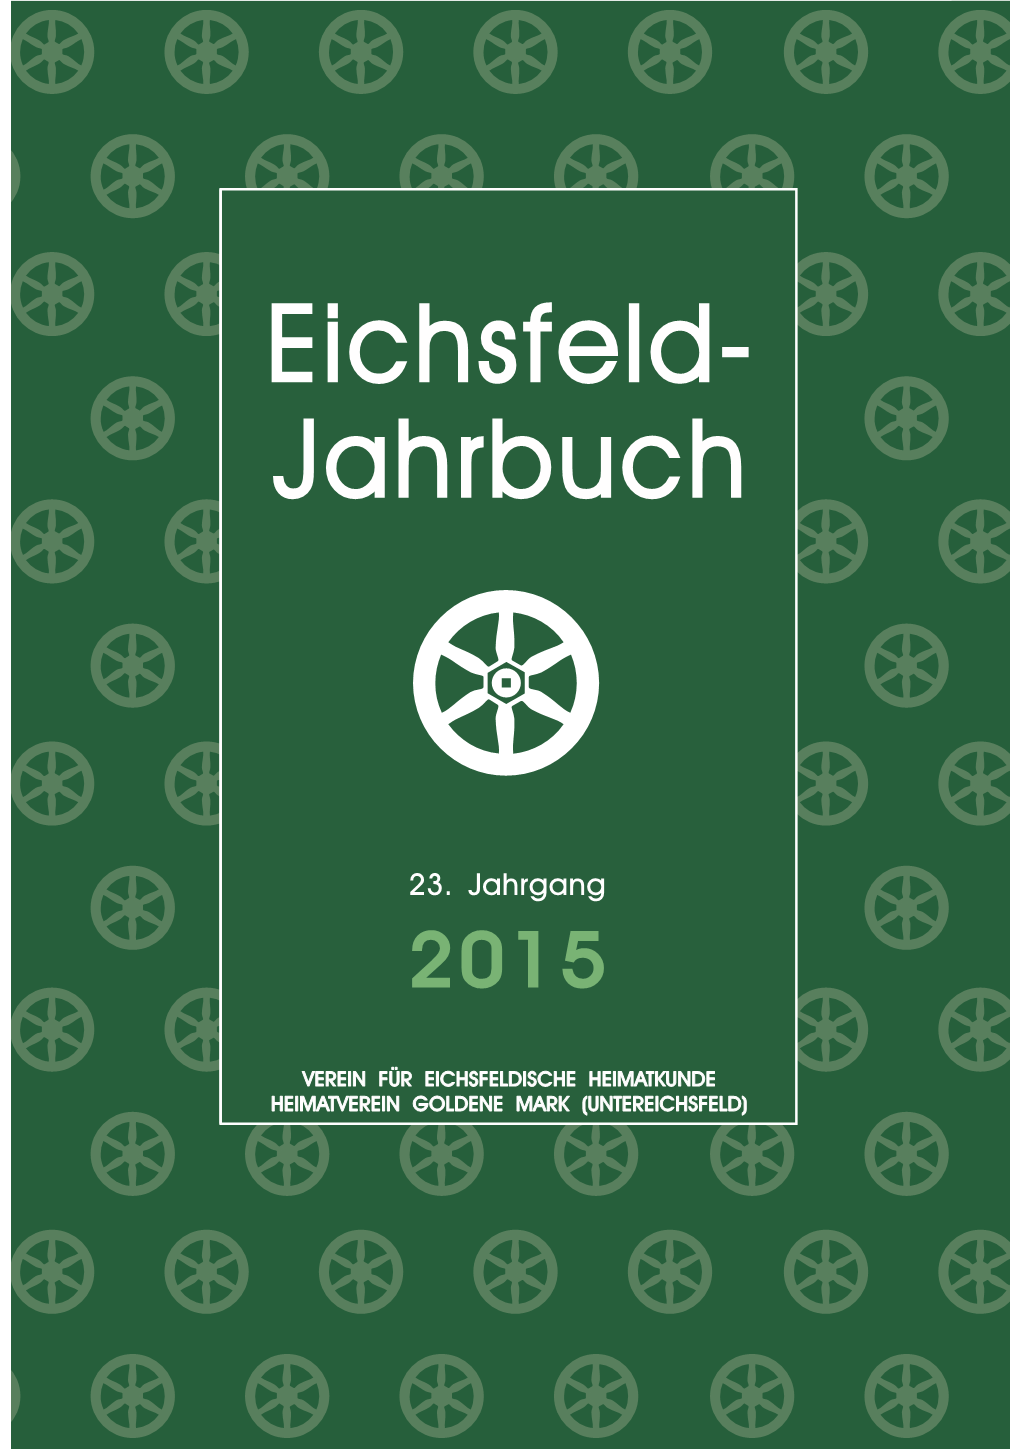 Eichsfeld- Jahrbuch